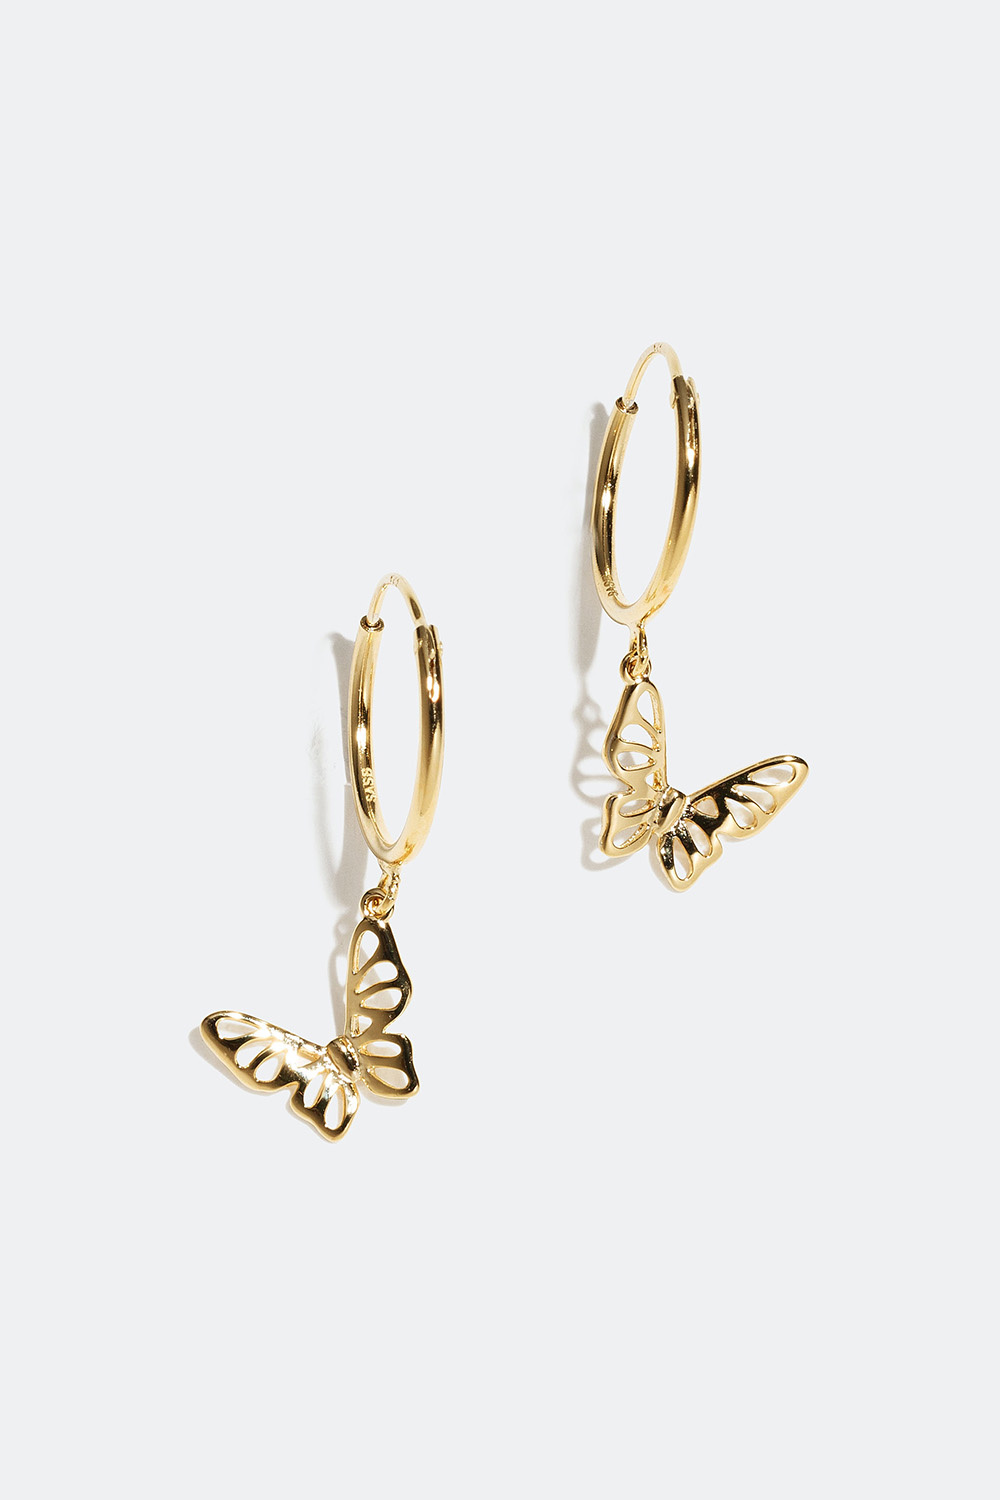 Øreringer med anheng formet som sommerfugl, forgylt med 18K gull, 1,4 cm